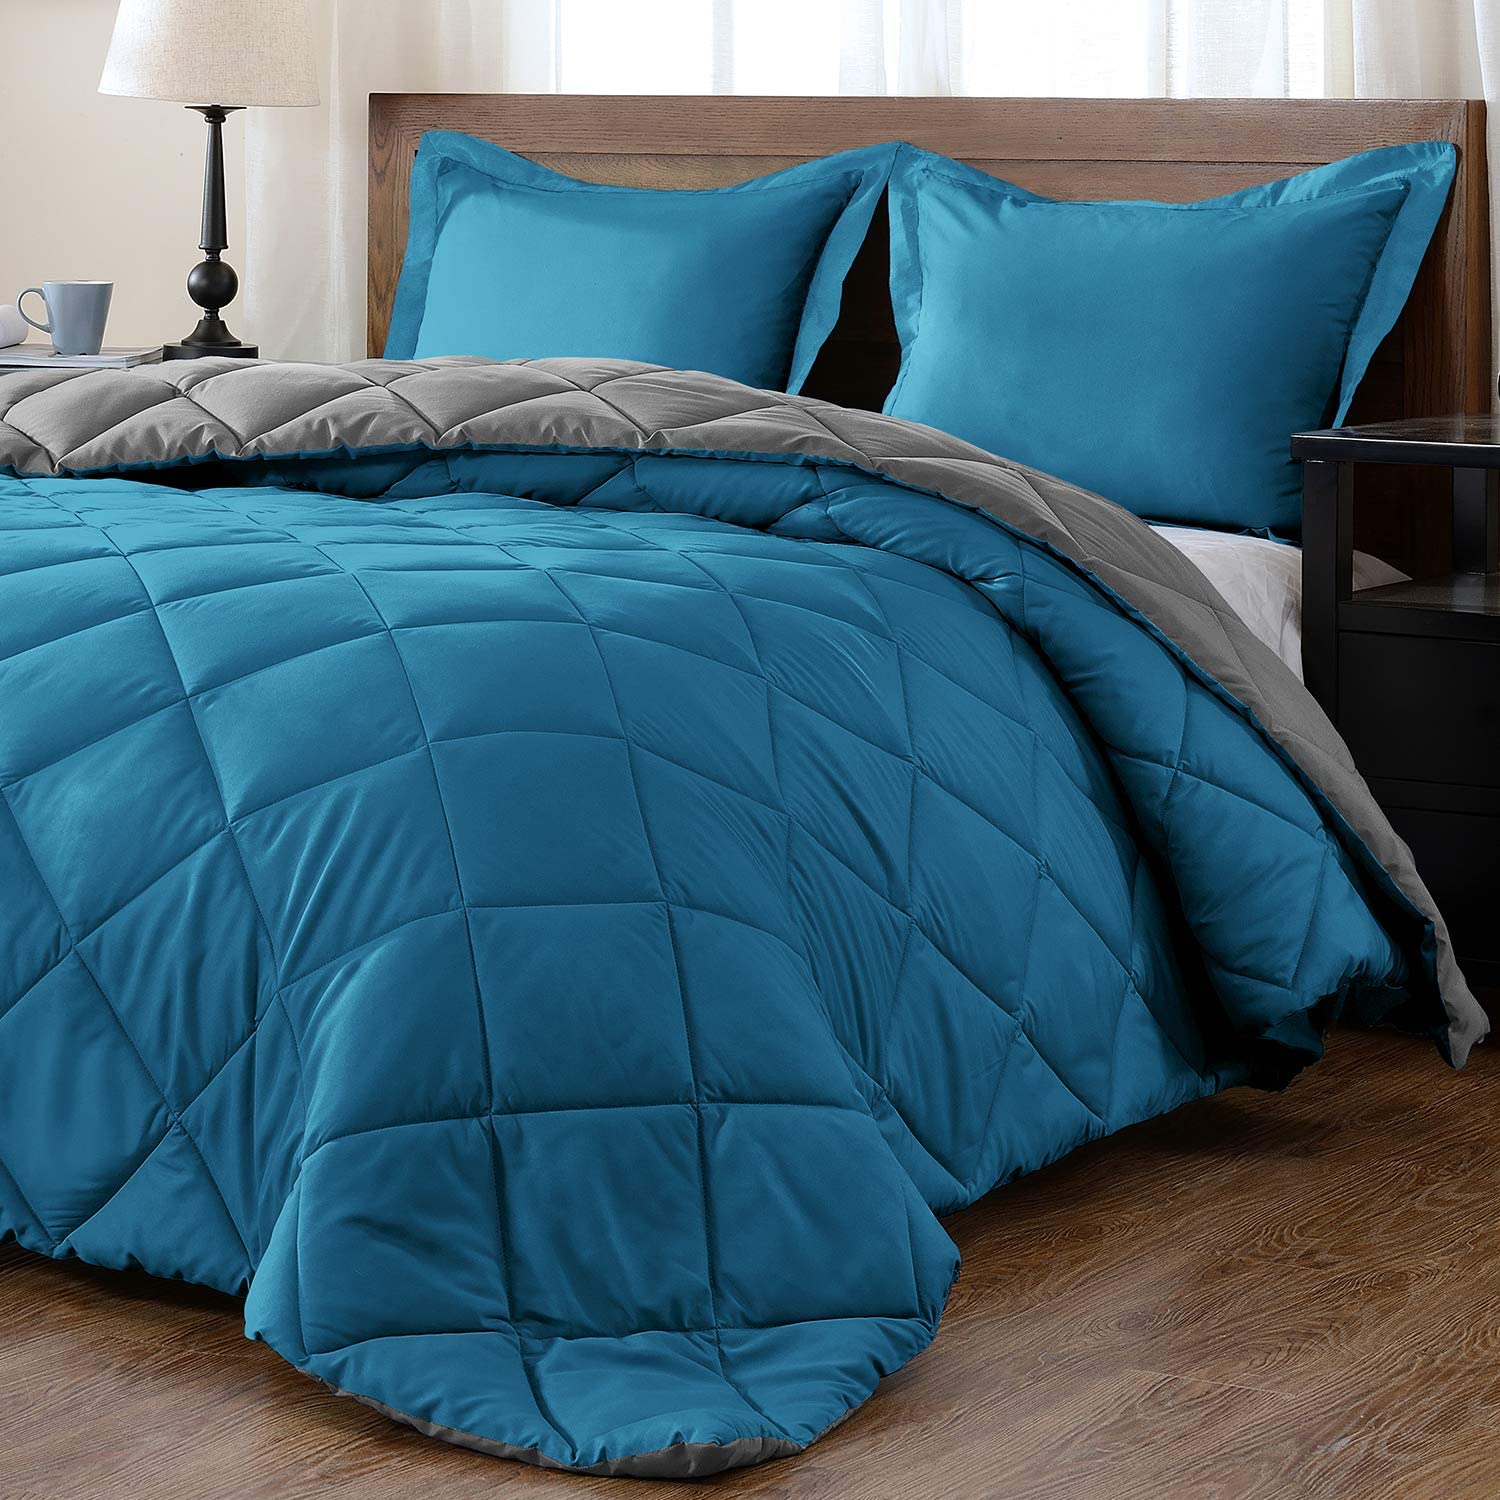 HHHC Lightweight Comforter Set Queen with 2 Pillow Shams - 3 Piece Set -  All Seasons Down Alternative Reversible Comforter Bedding Set - Soft